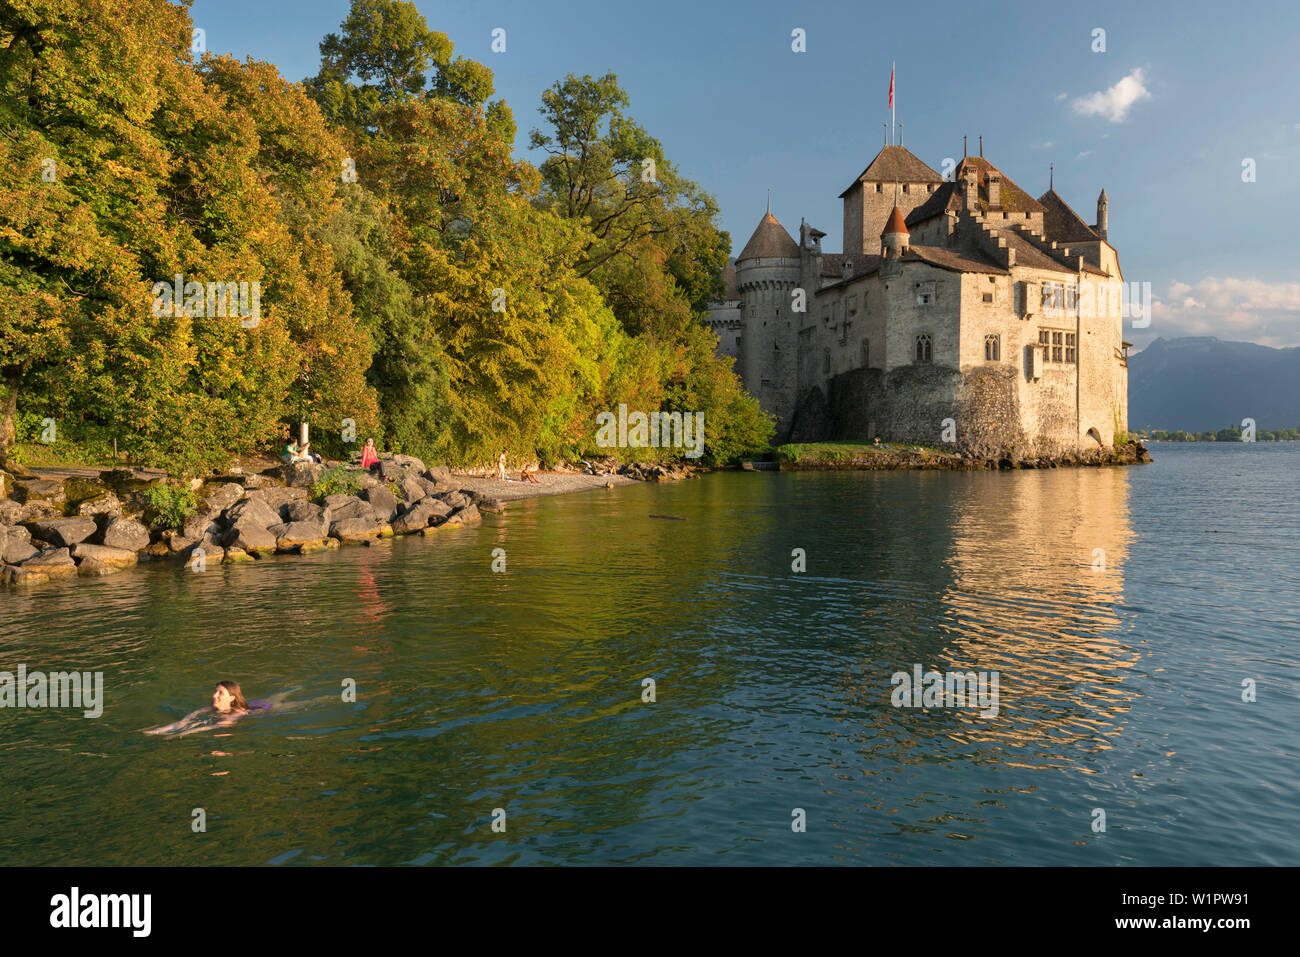 Château de Chillon, Veytaux, Montreux, Genfer See, Waadt, Schweiz Banque D'Images